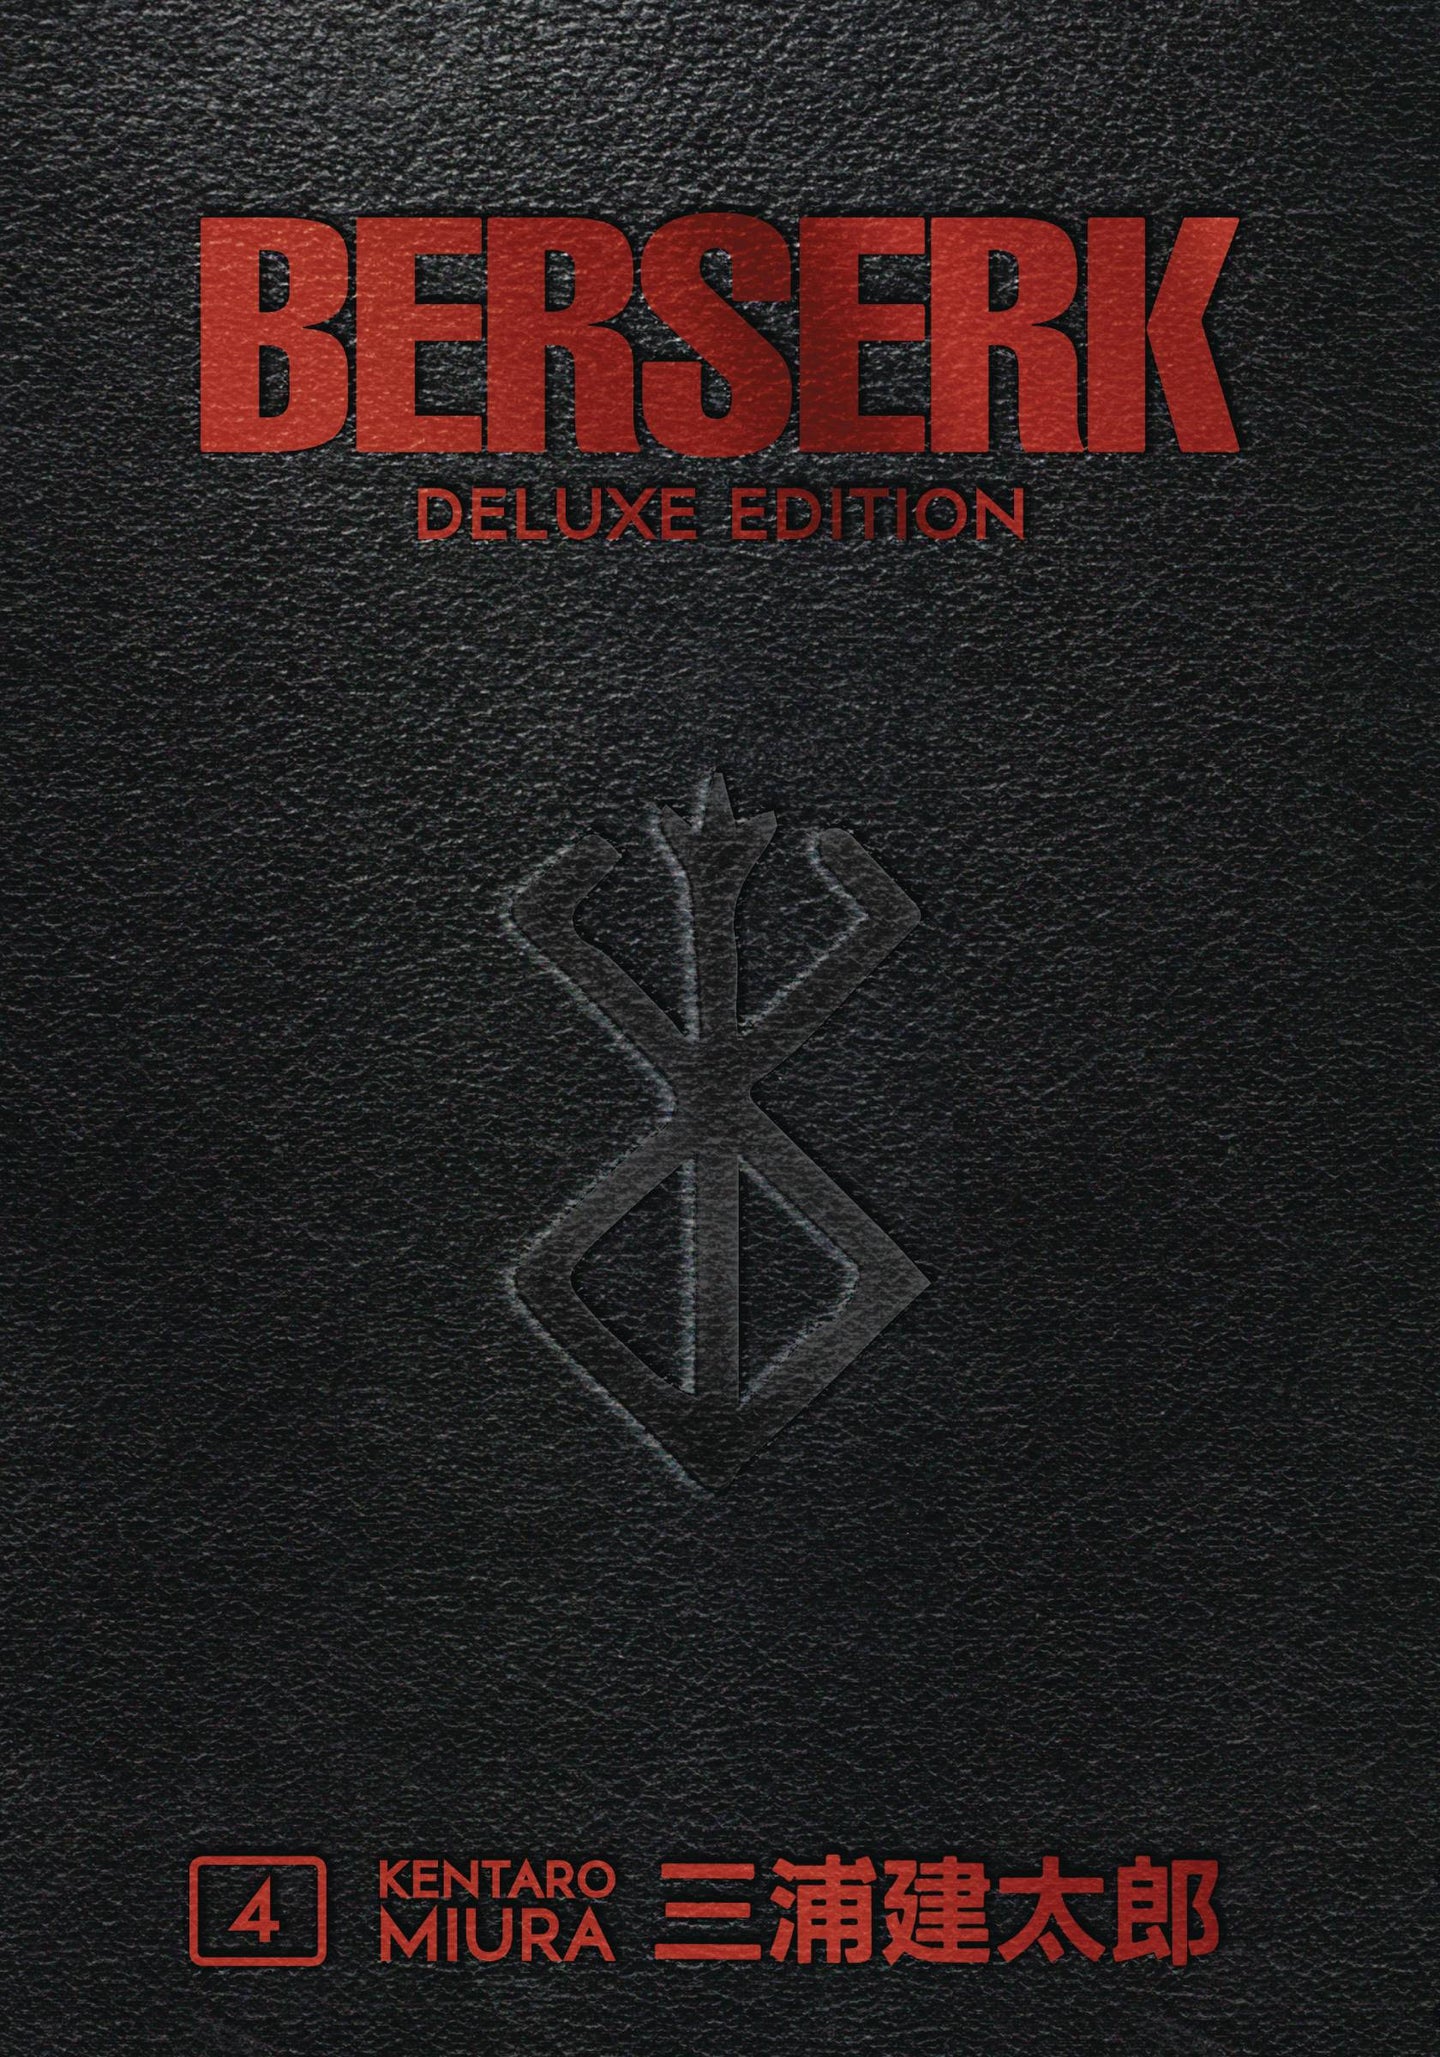 Berserk Deluxe Edition Hardcover Vol 4